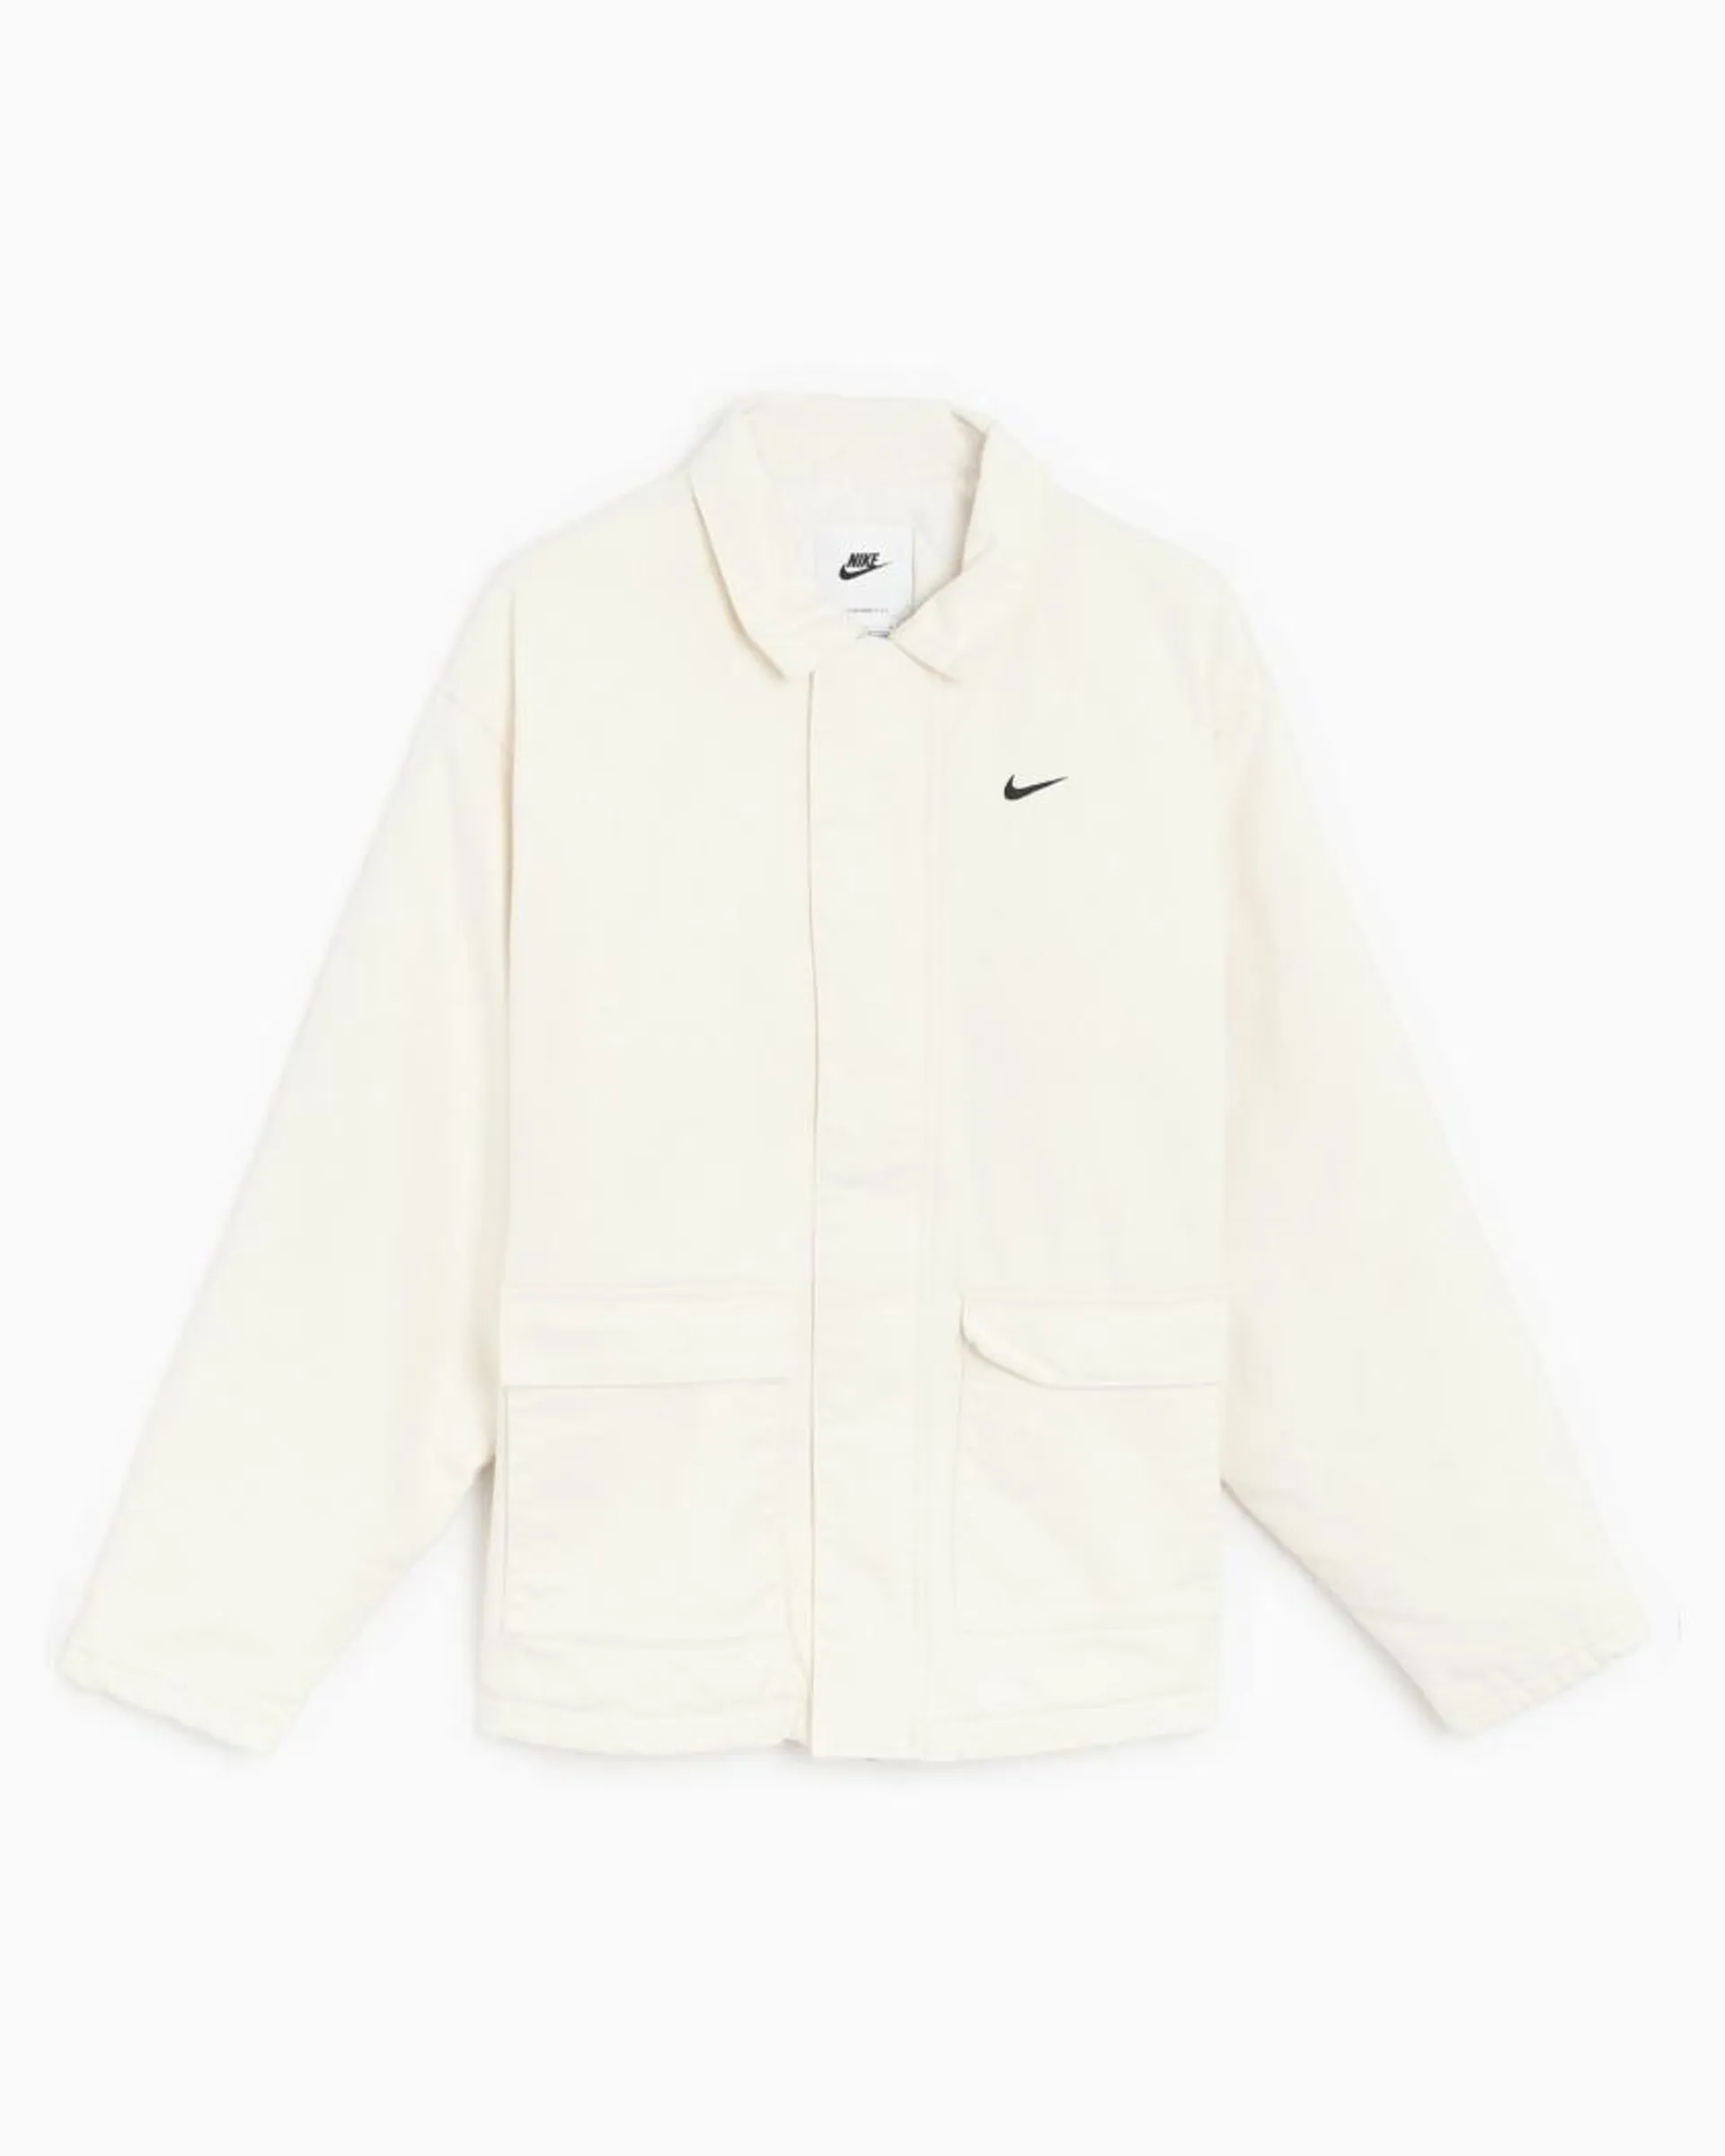 Nike Sportswear Men's Insulated Work Jacket